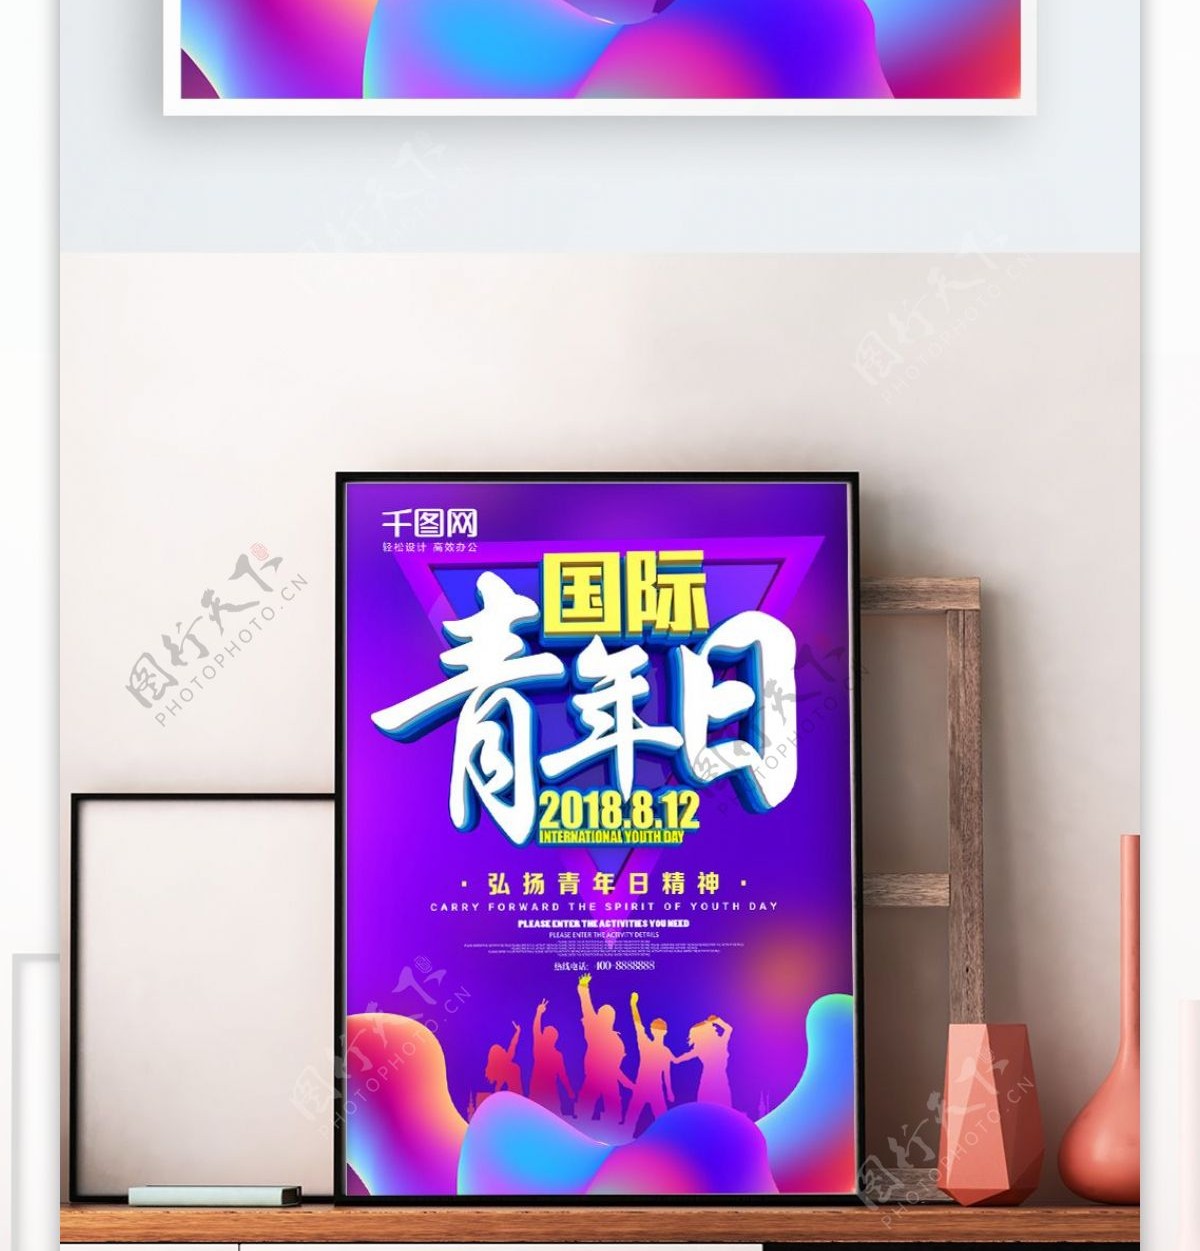 C4D炫彩国际青年日海报